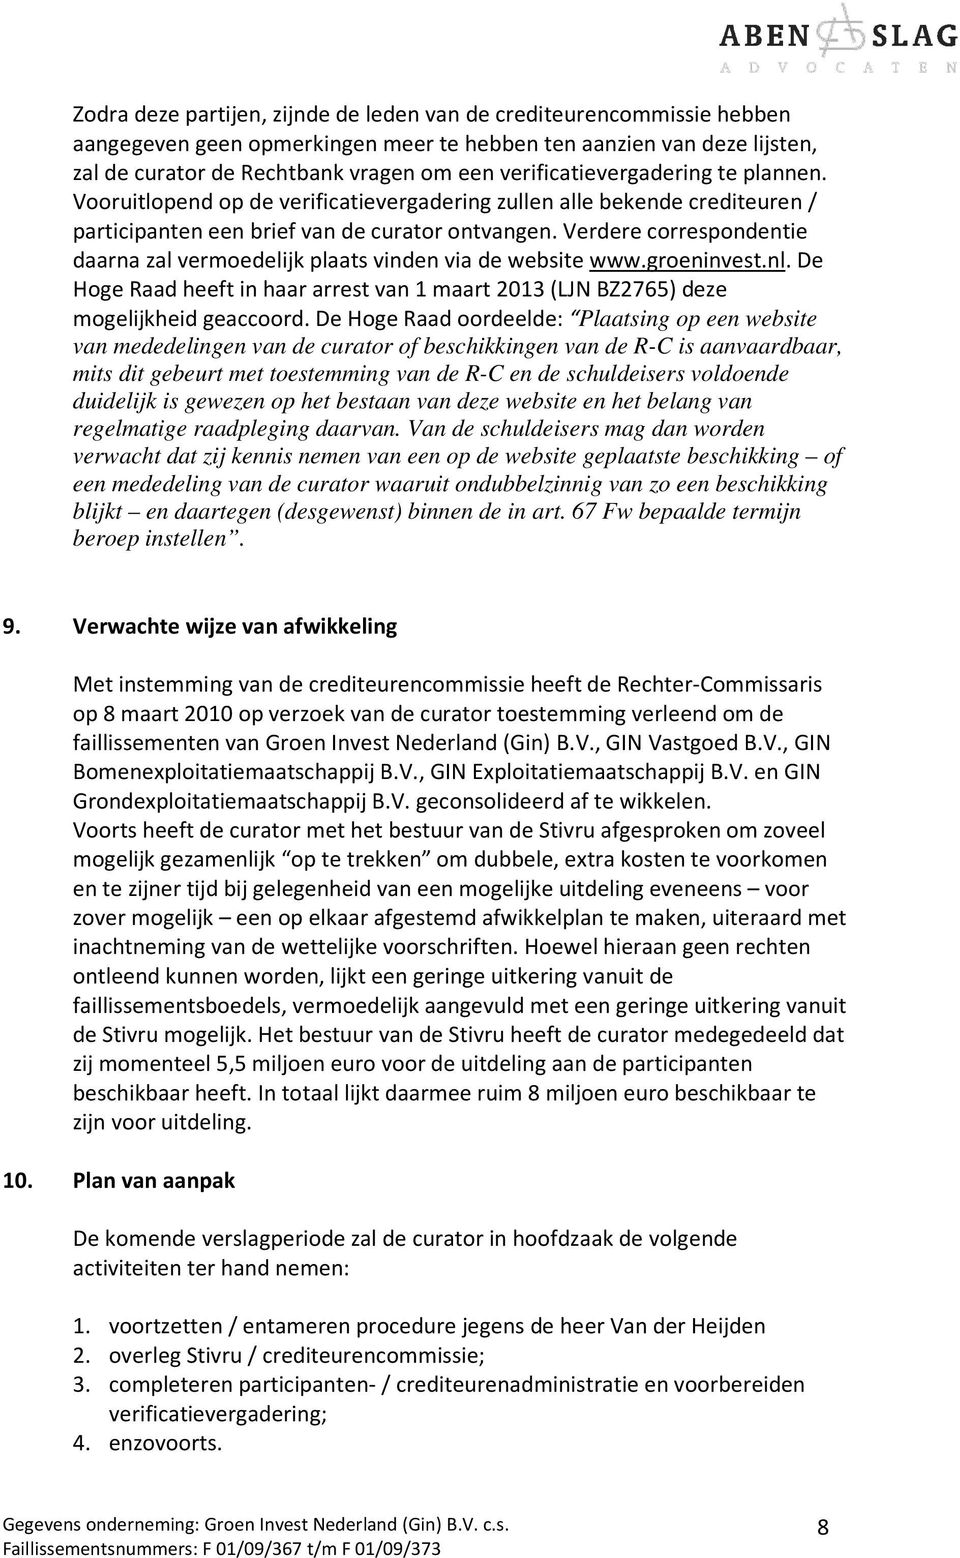 Verdere correspondentie daarna zal vermoedelijk plaats vinden via de website www.groeninvest.nl. De Hoge Raad heeft in haar arrest van 1 maart 2013 (LJN BZ2765) deze mogelijkheid geaccoord.